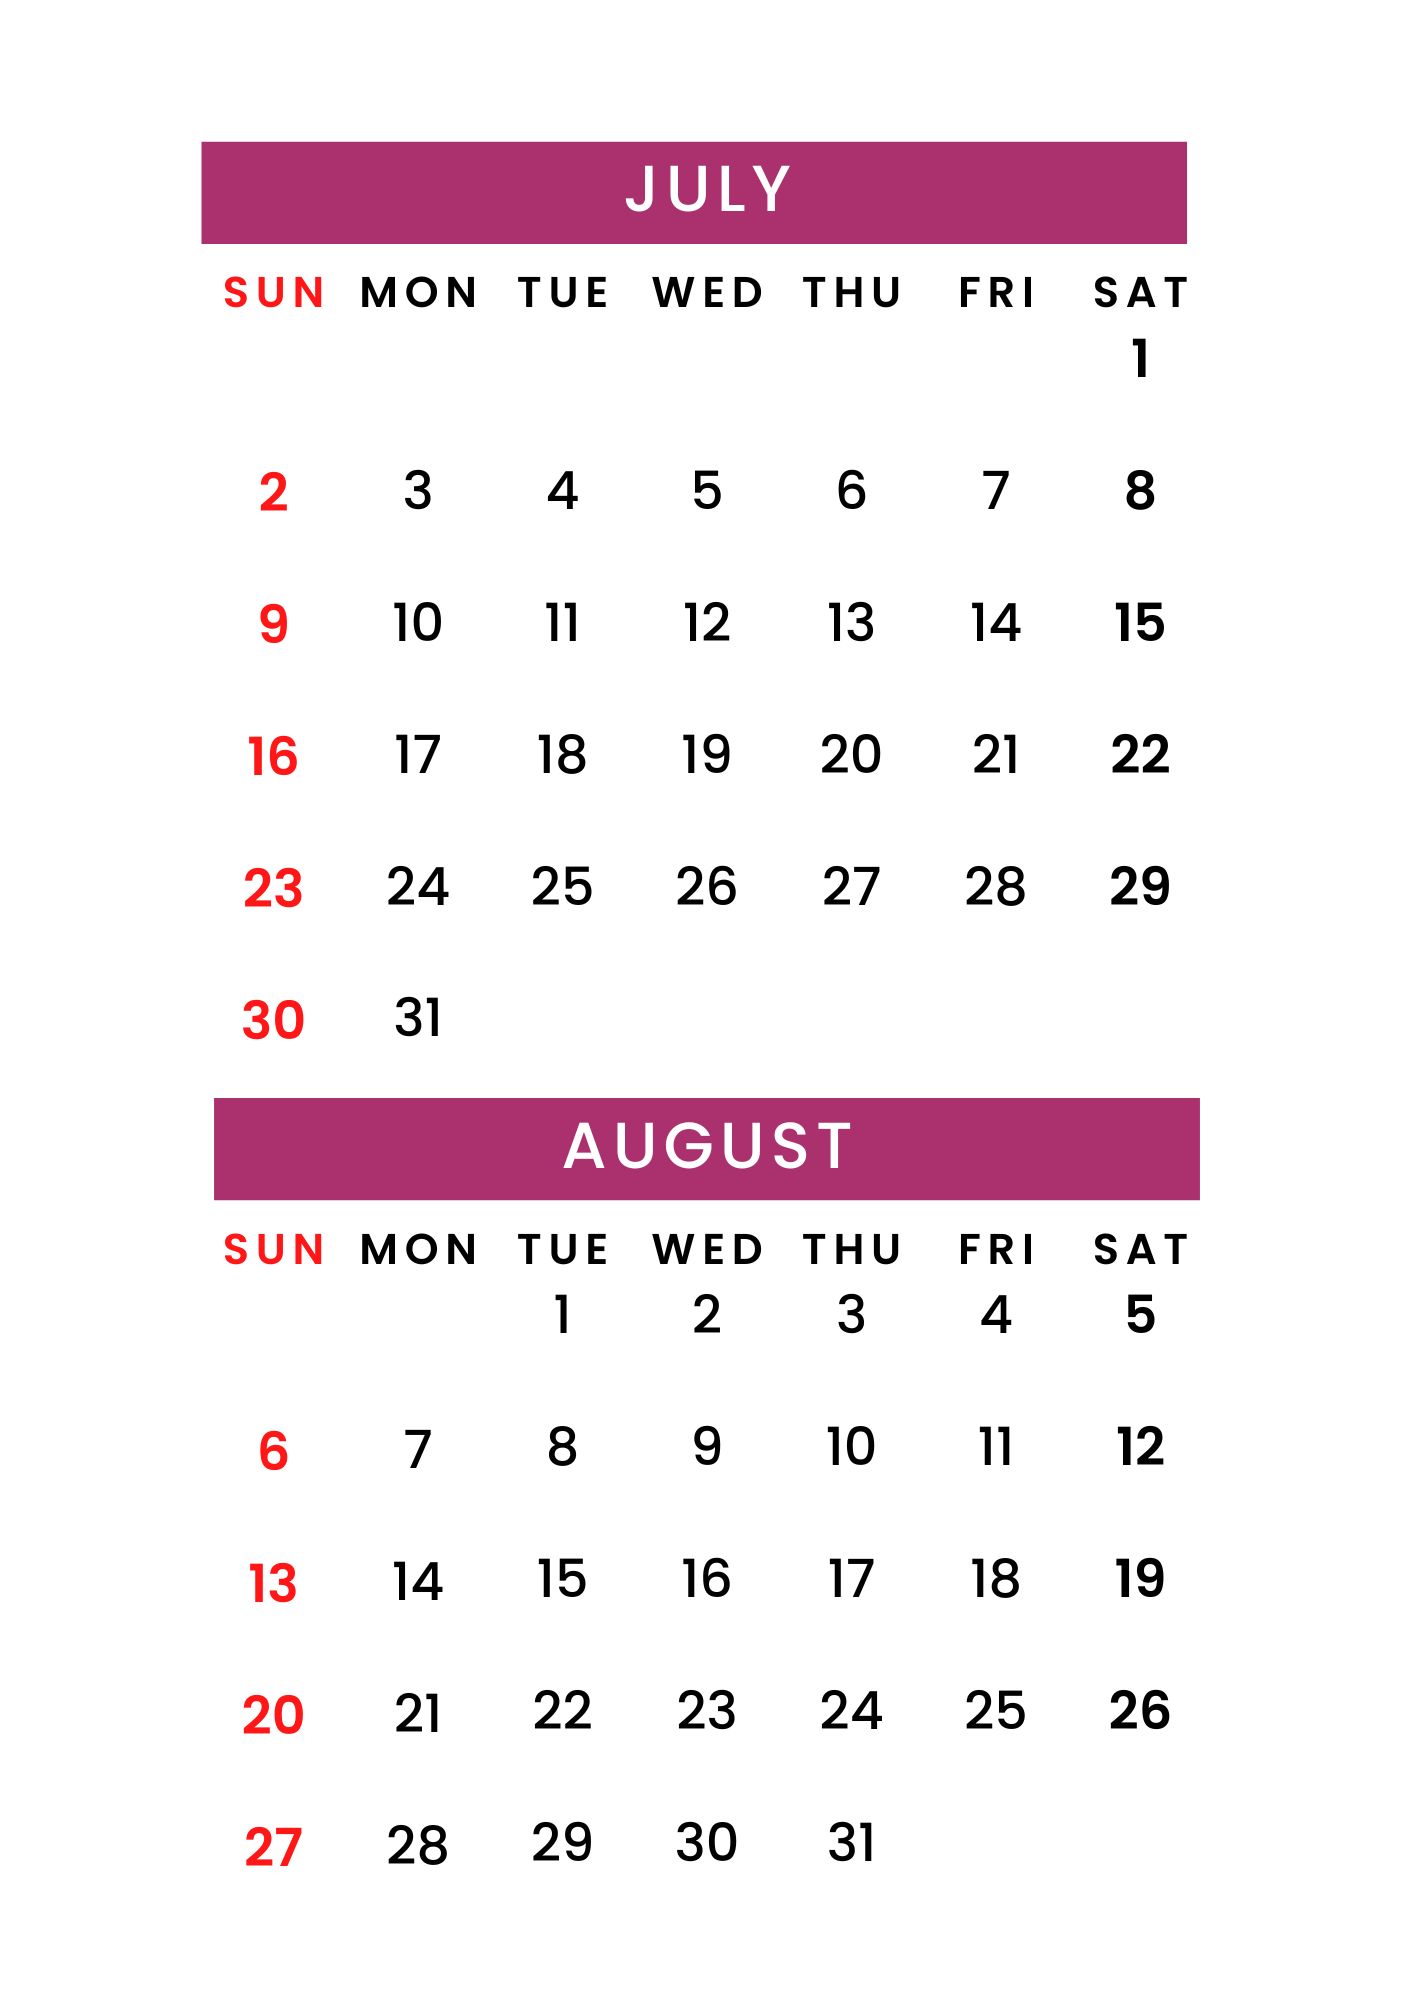 July August 2023 Calendar